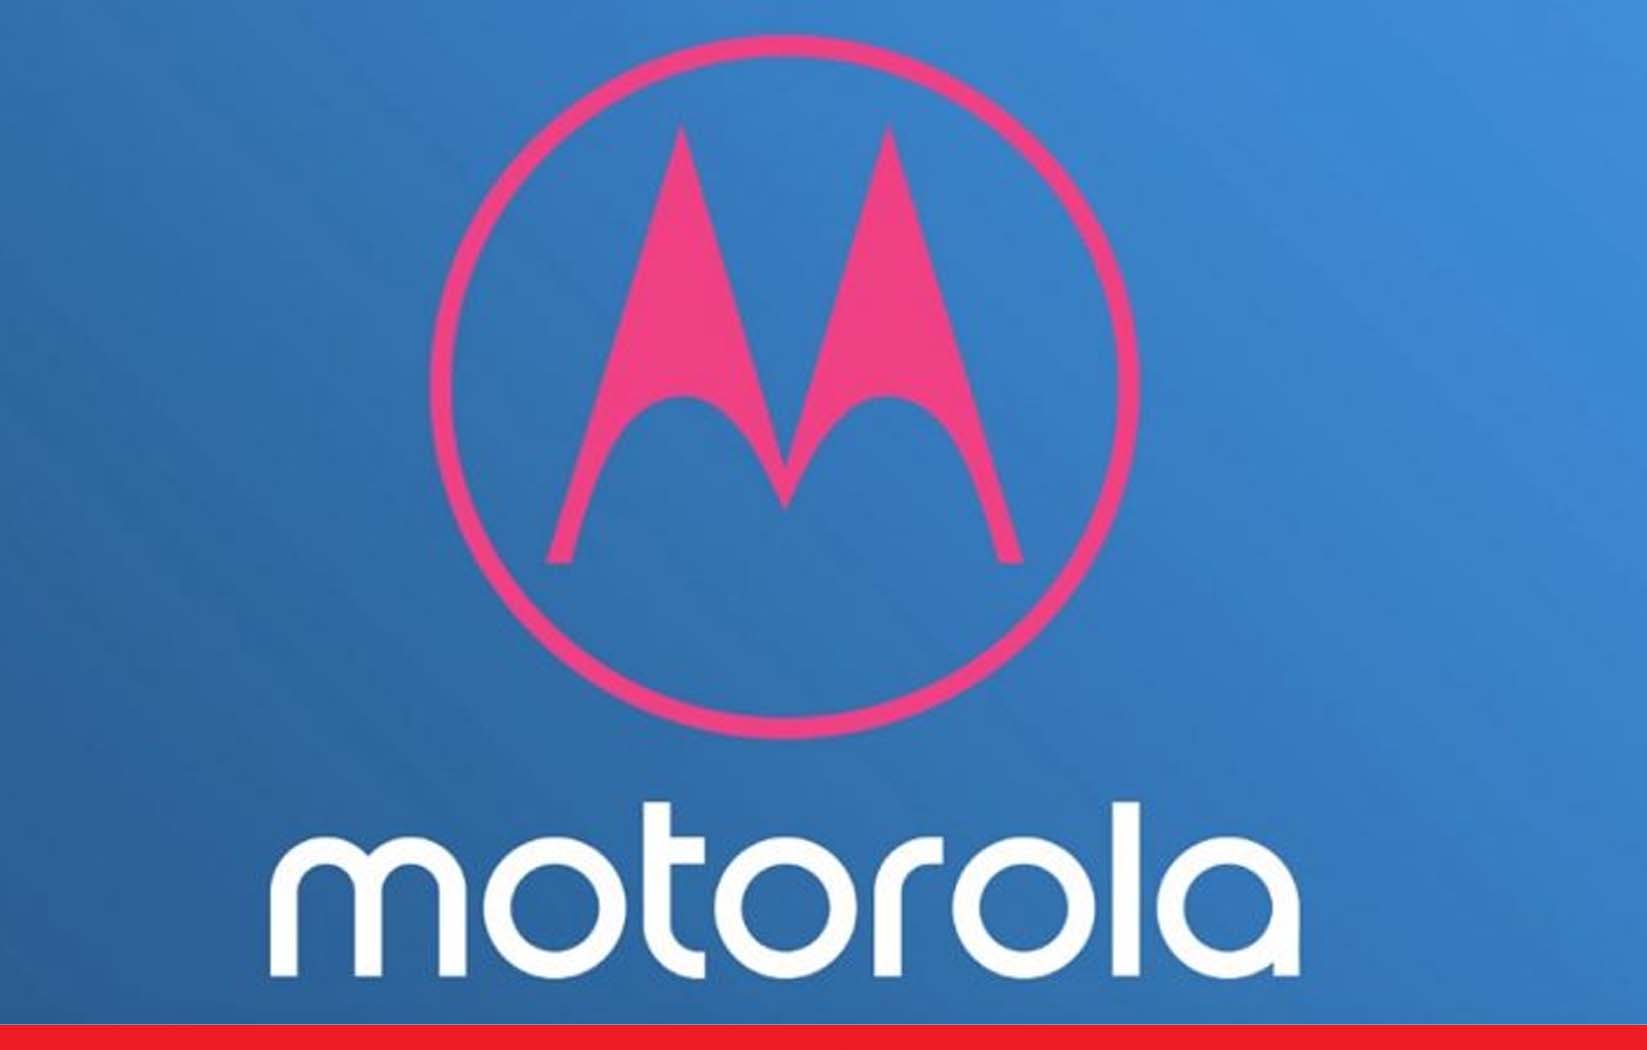 दुनिया का पहला 200MP कैमरे वाला स्मार्टफोन, Motorola देगा DSLR को चुनौती